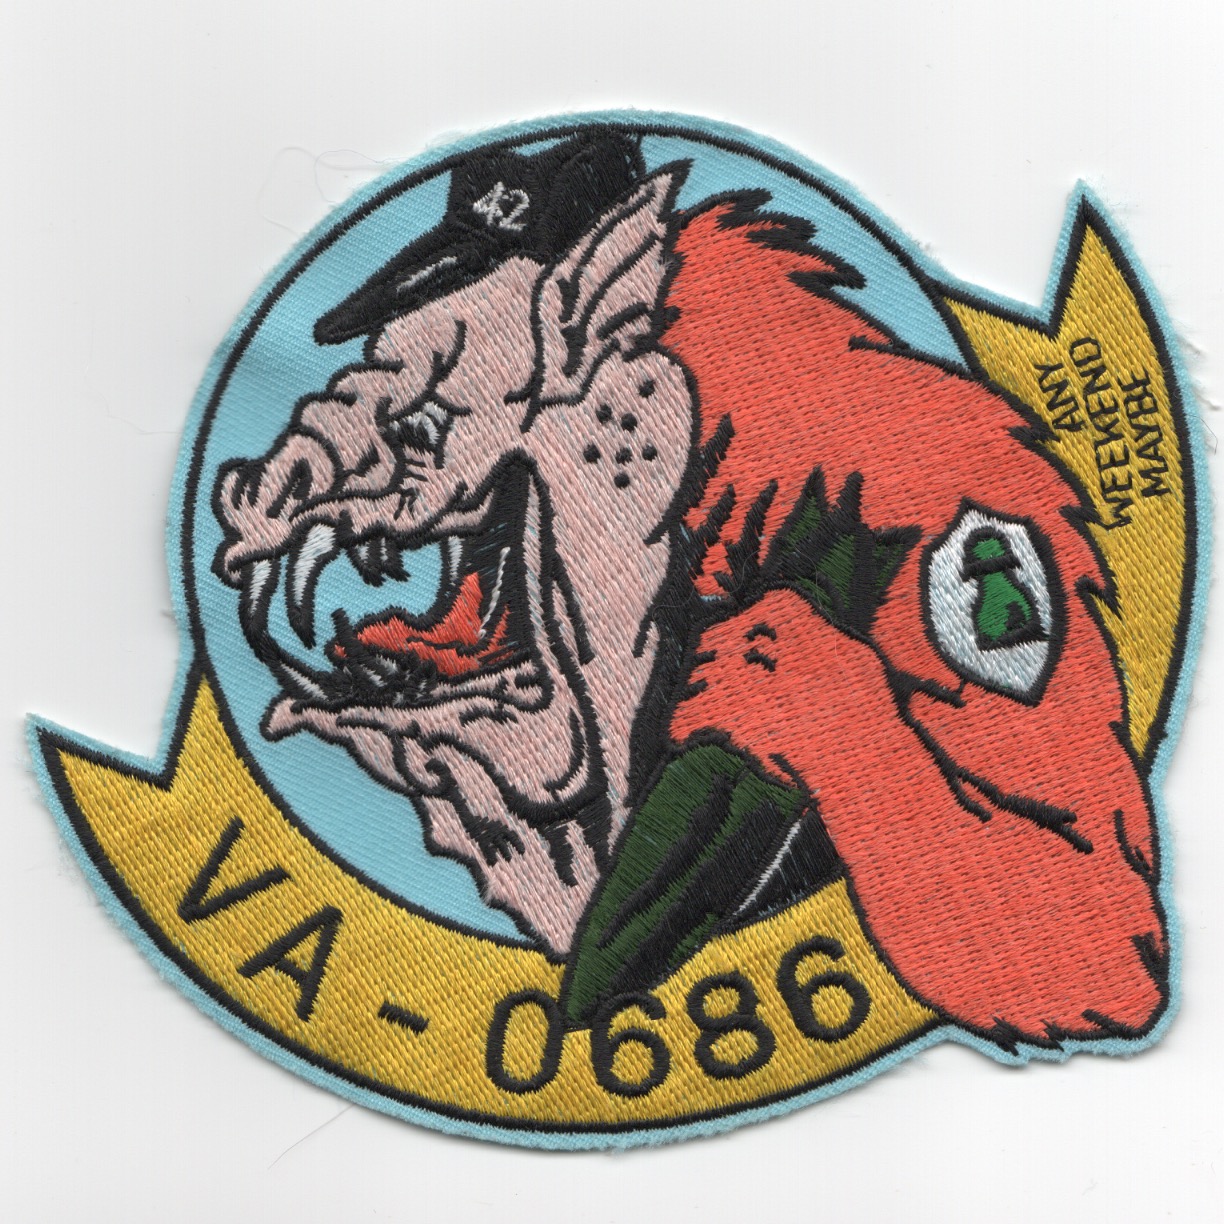 275) VA-0686/VA-42 Patch